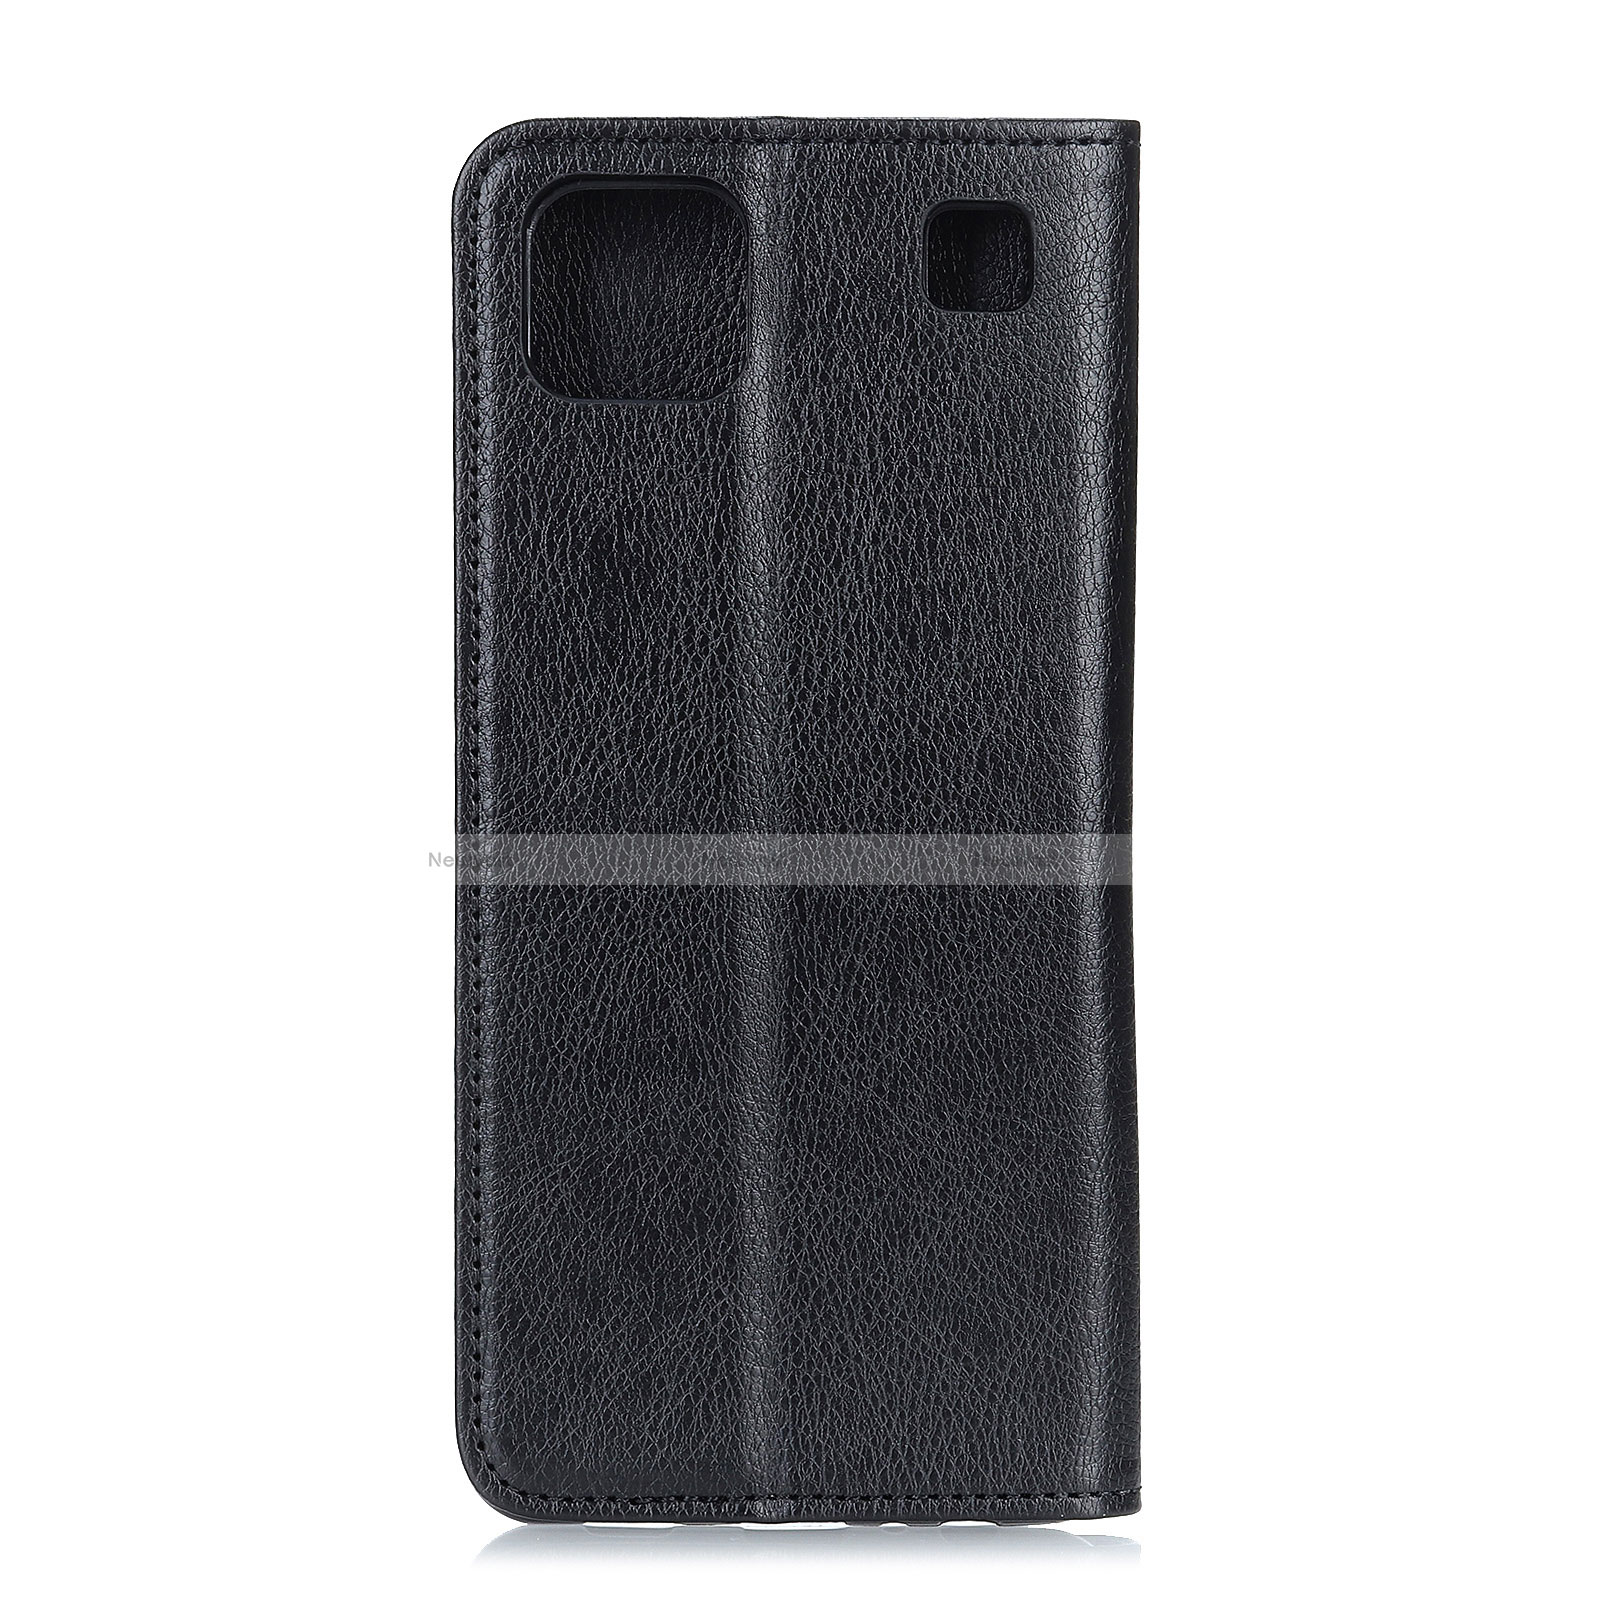 Leather Case Stands Flip Cover L08 Holder for LG K92 5G